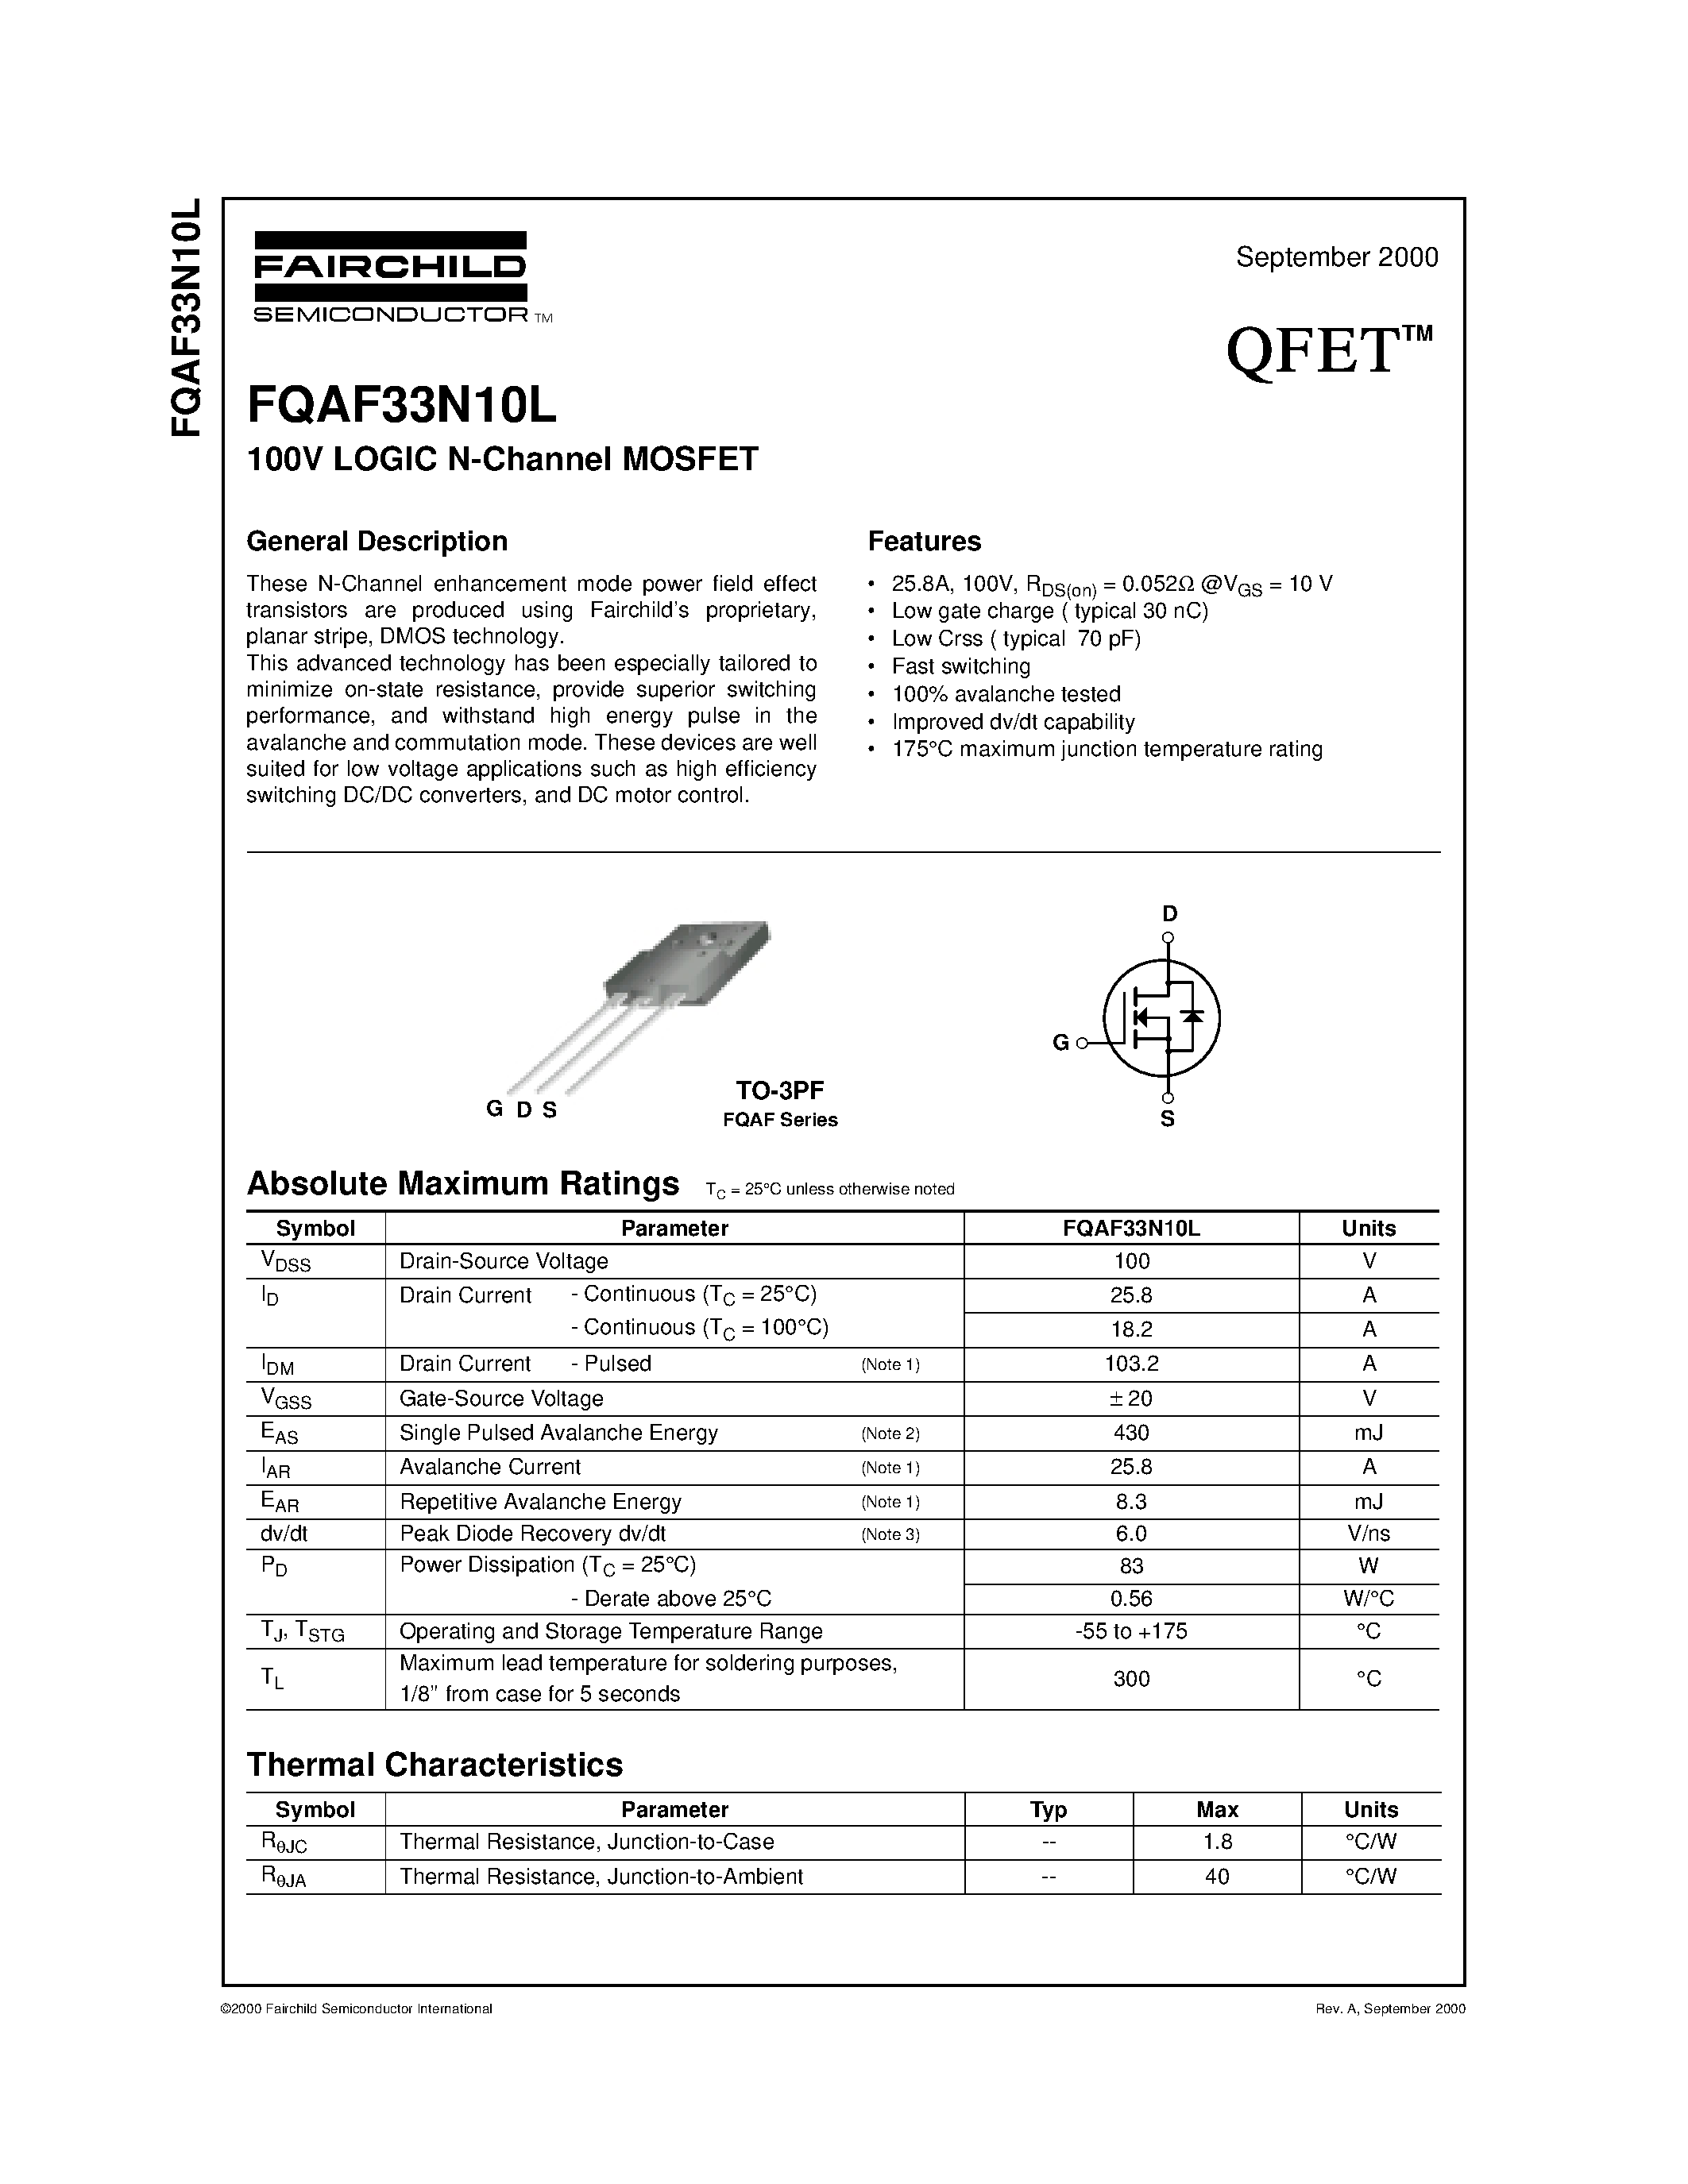 Datasheet FQAF33N10L - 100V LOGIC N-Channel MOSFET page 1